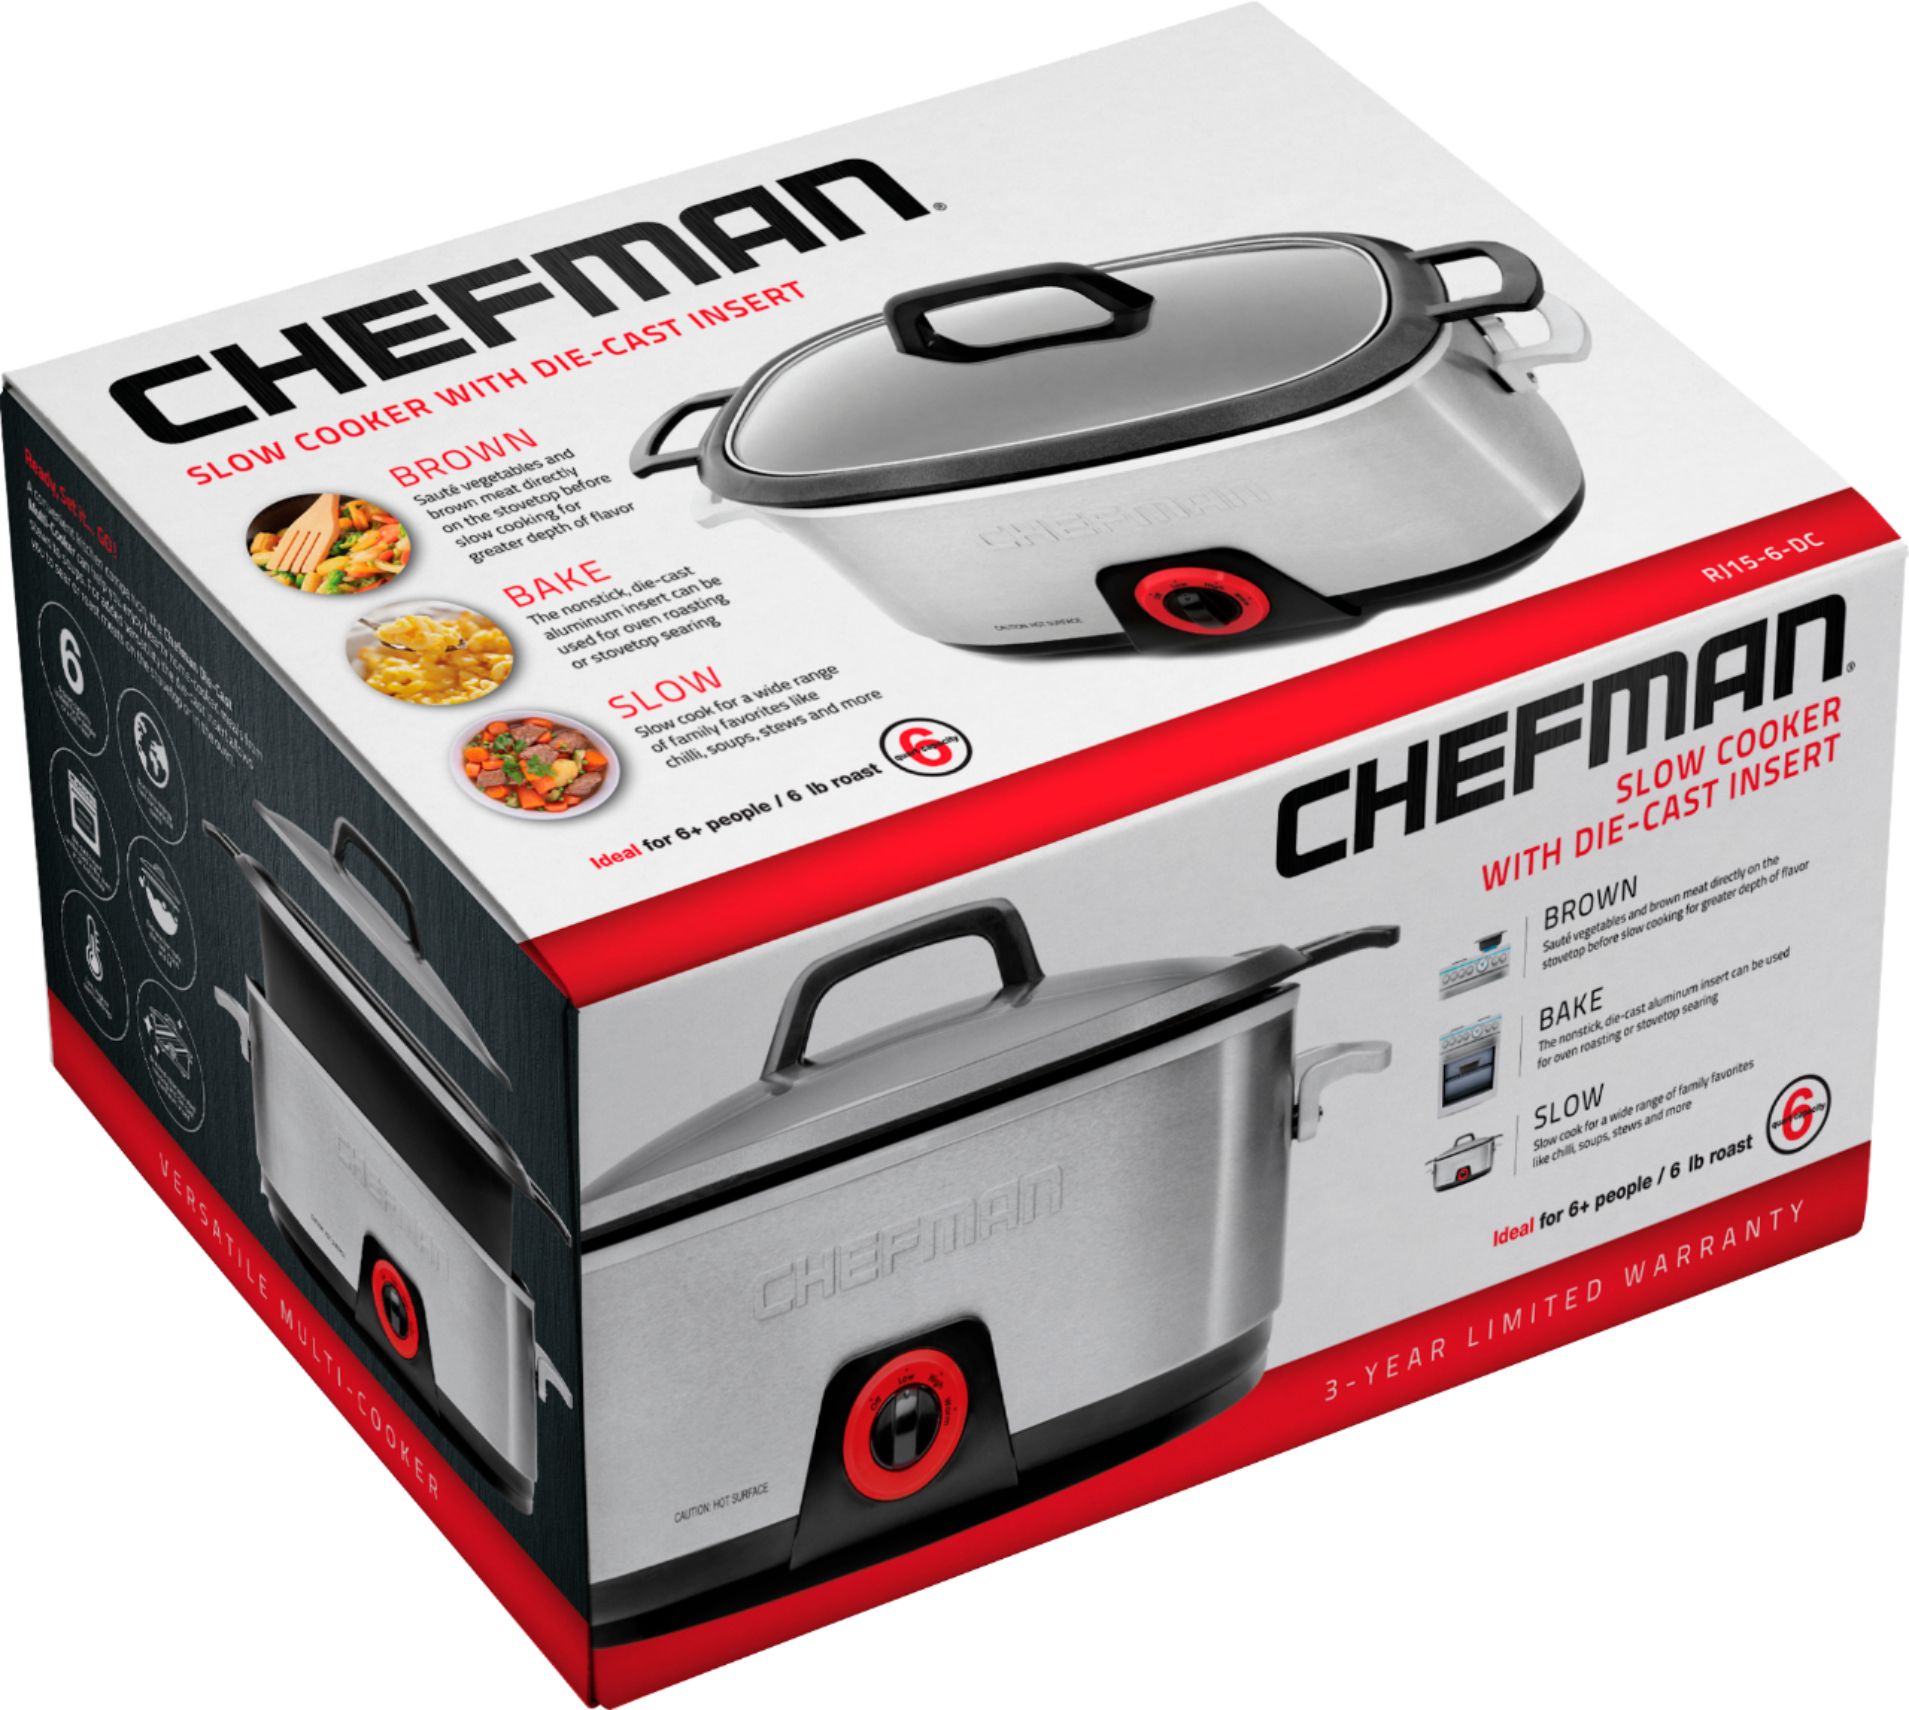 Best Buy: Chefman 2.5-Quart Slow Cooker Stainless Steel/Black RJ15-125-D